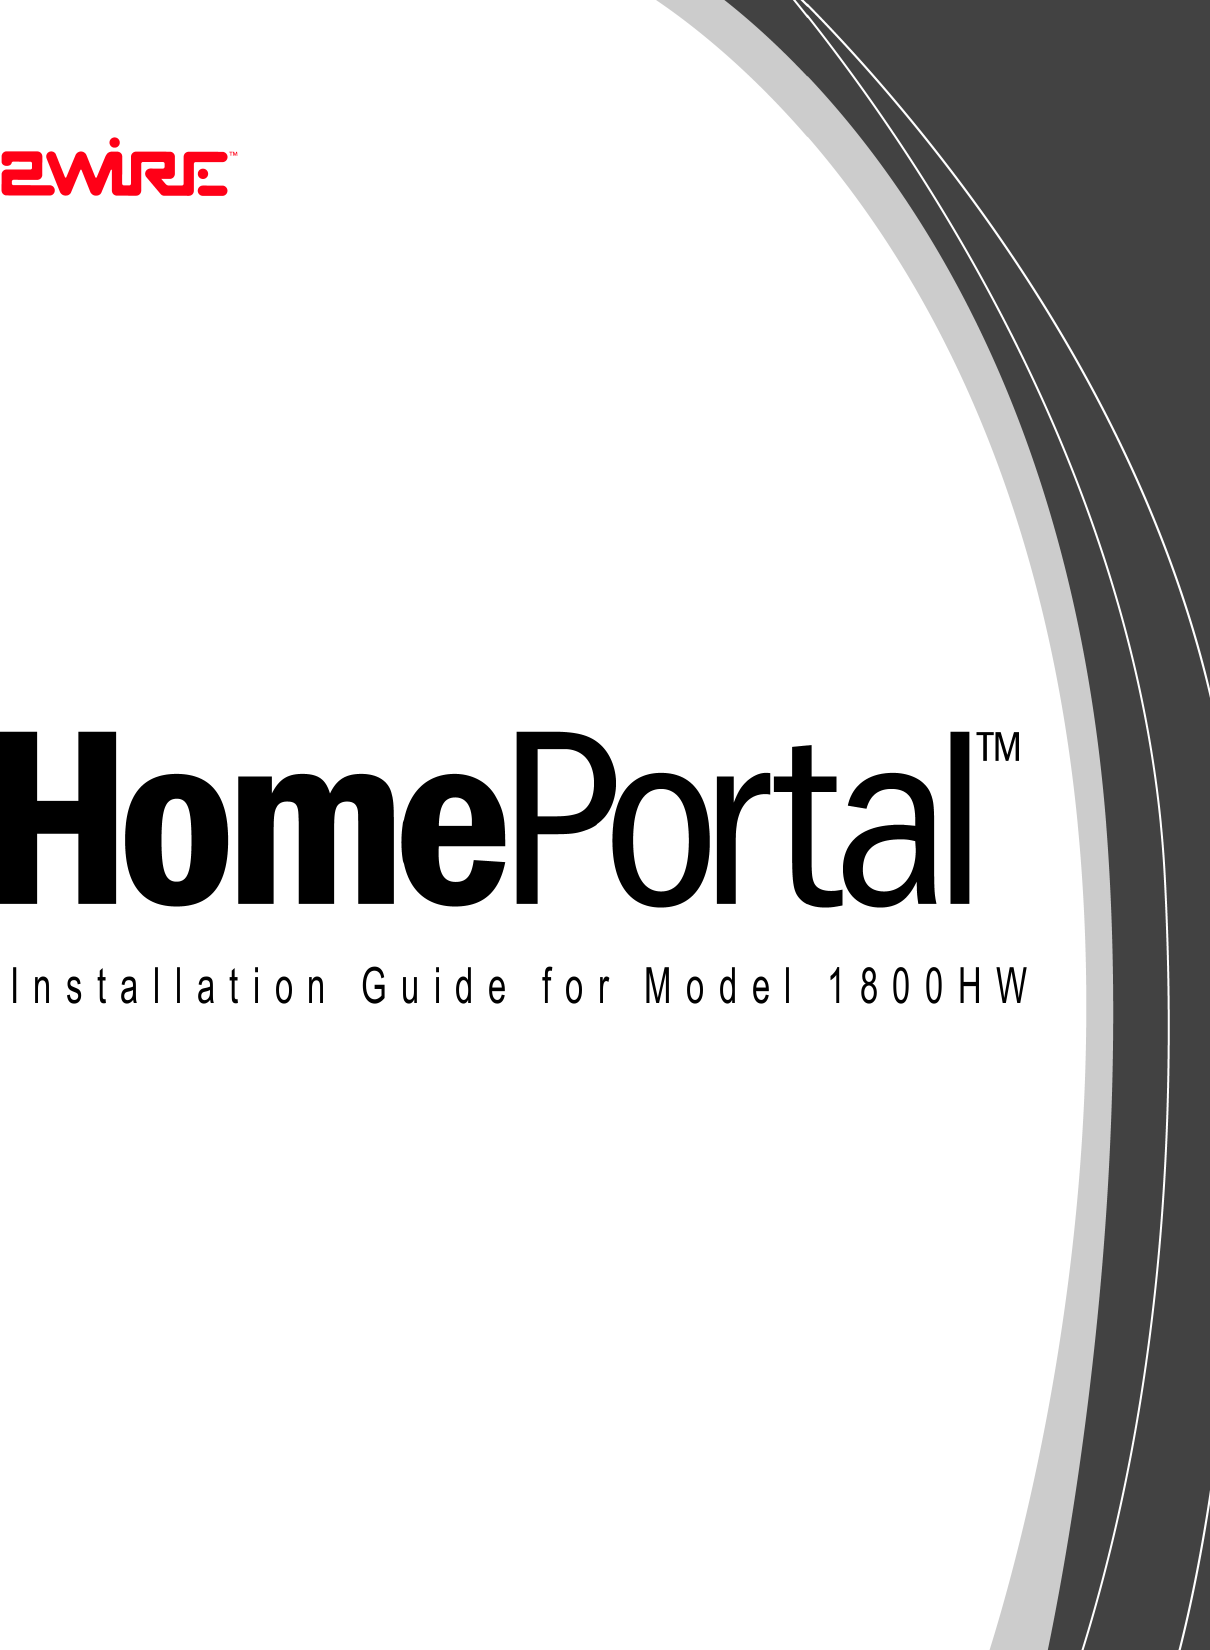 Installation Guide for Model 1800HW